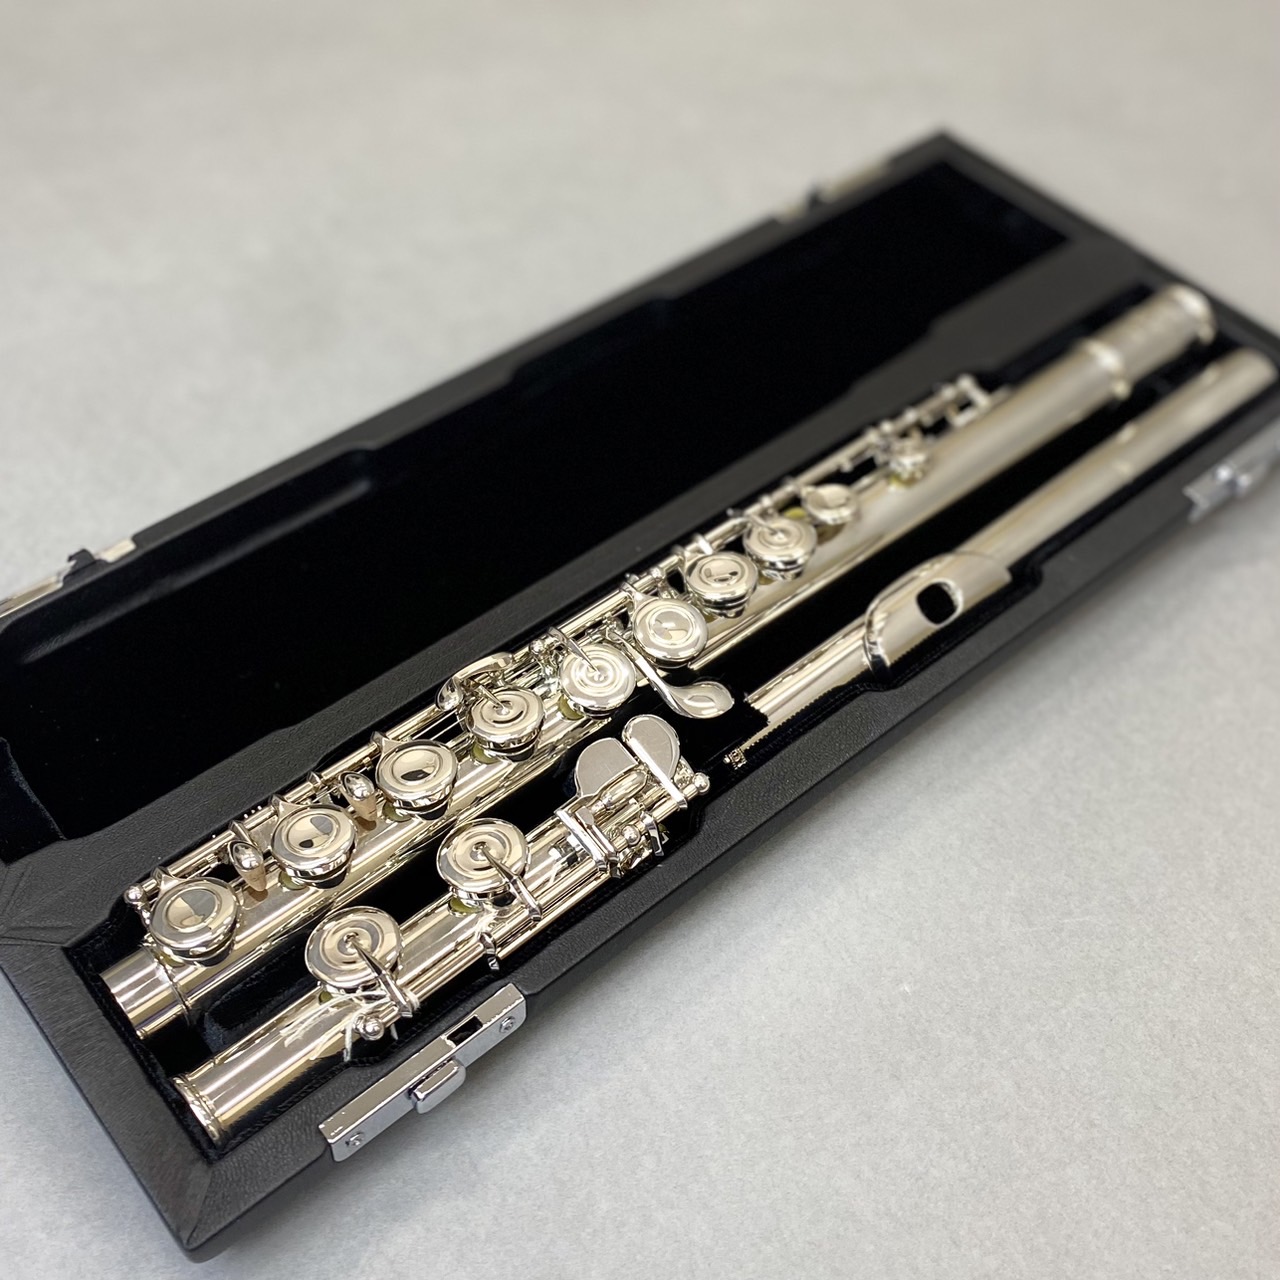 銀製頭部管 サンキョウ フルート エチュード SANKYO種類フルート - 管楽器・吹奏楽器